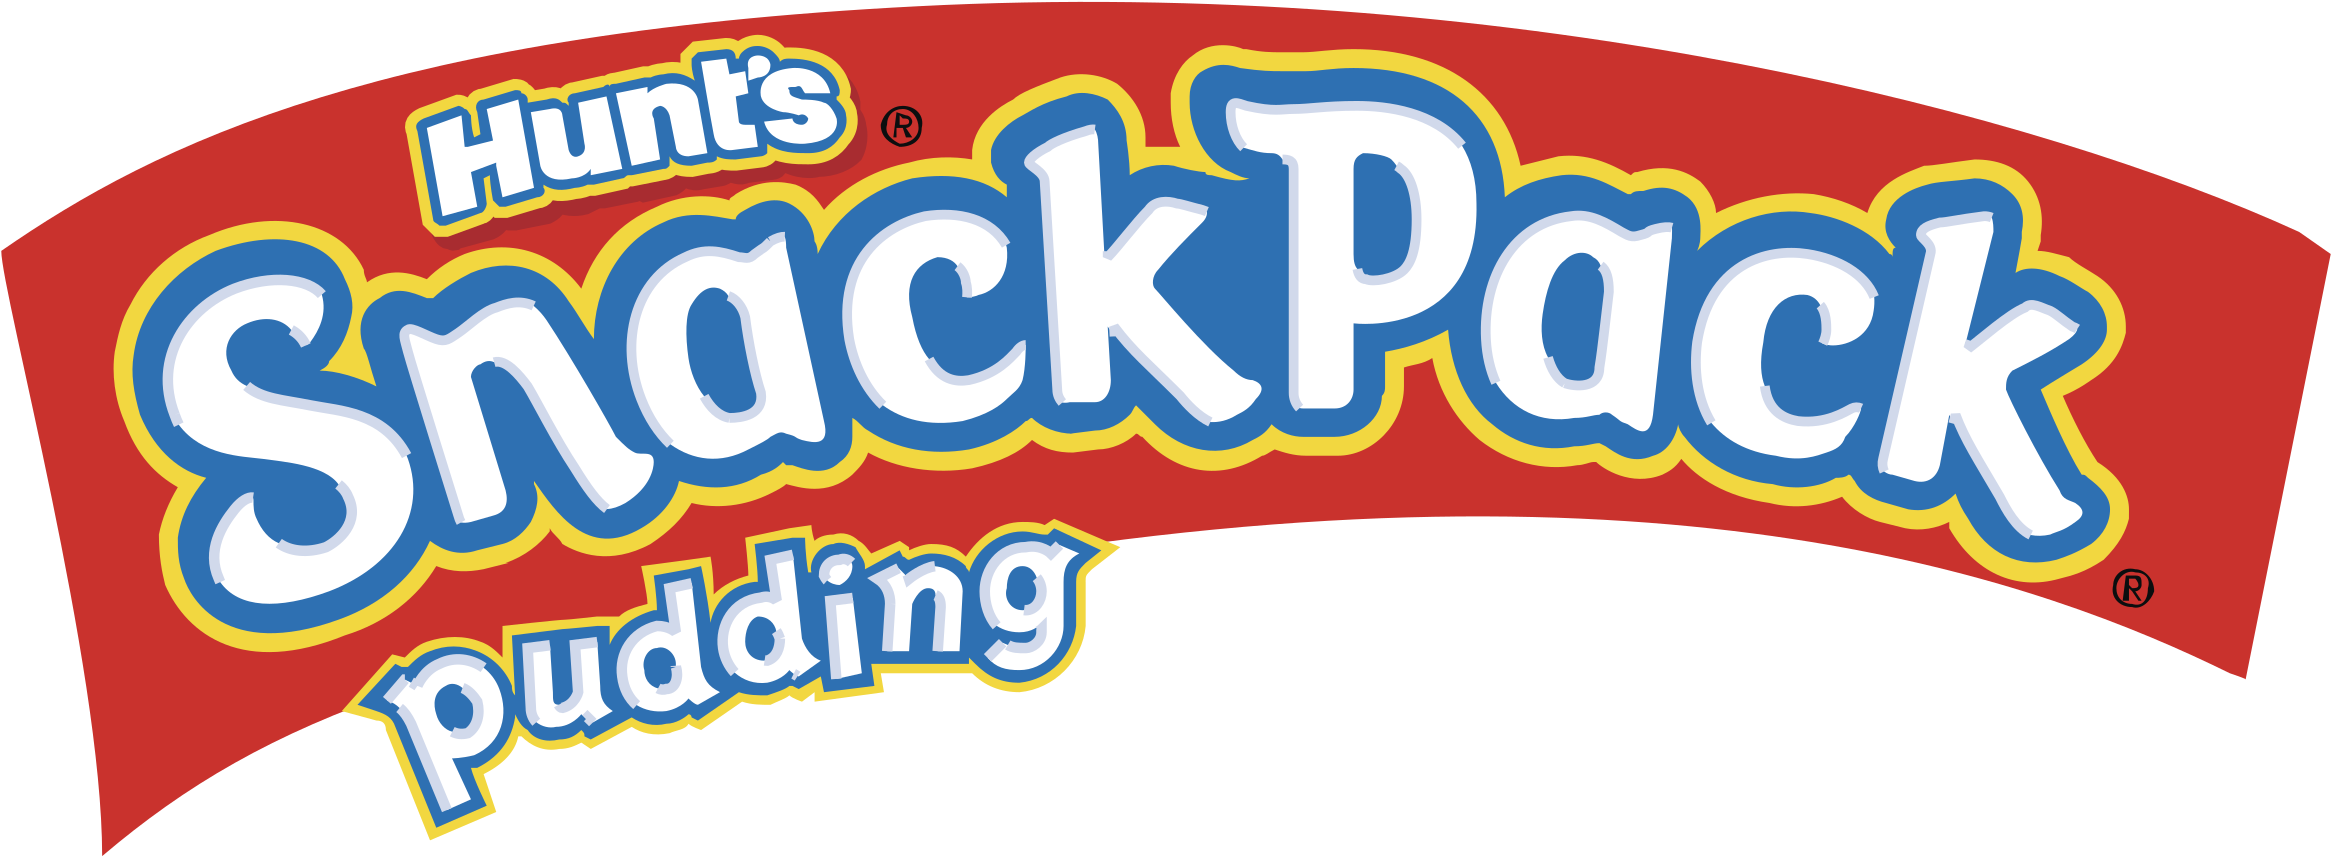 Hunts Snack Pack Pudding Logo